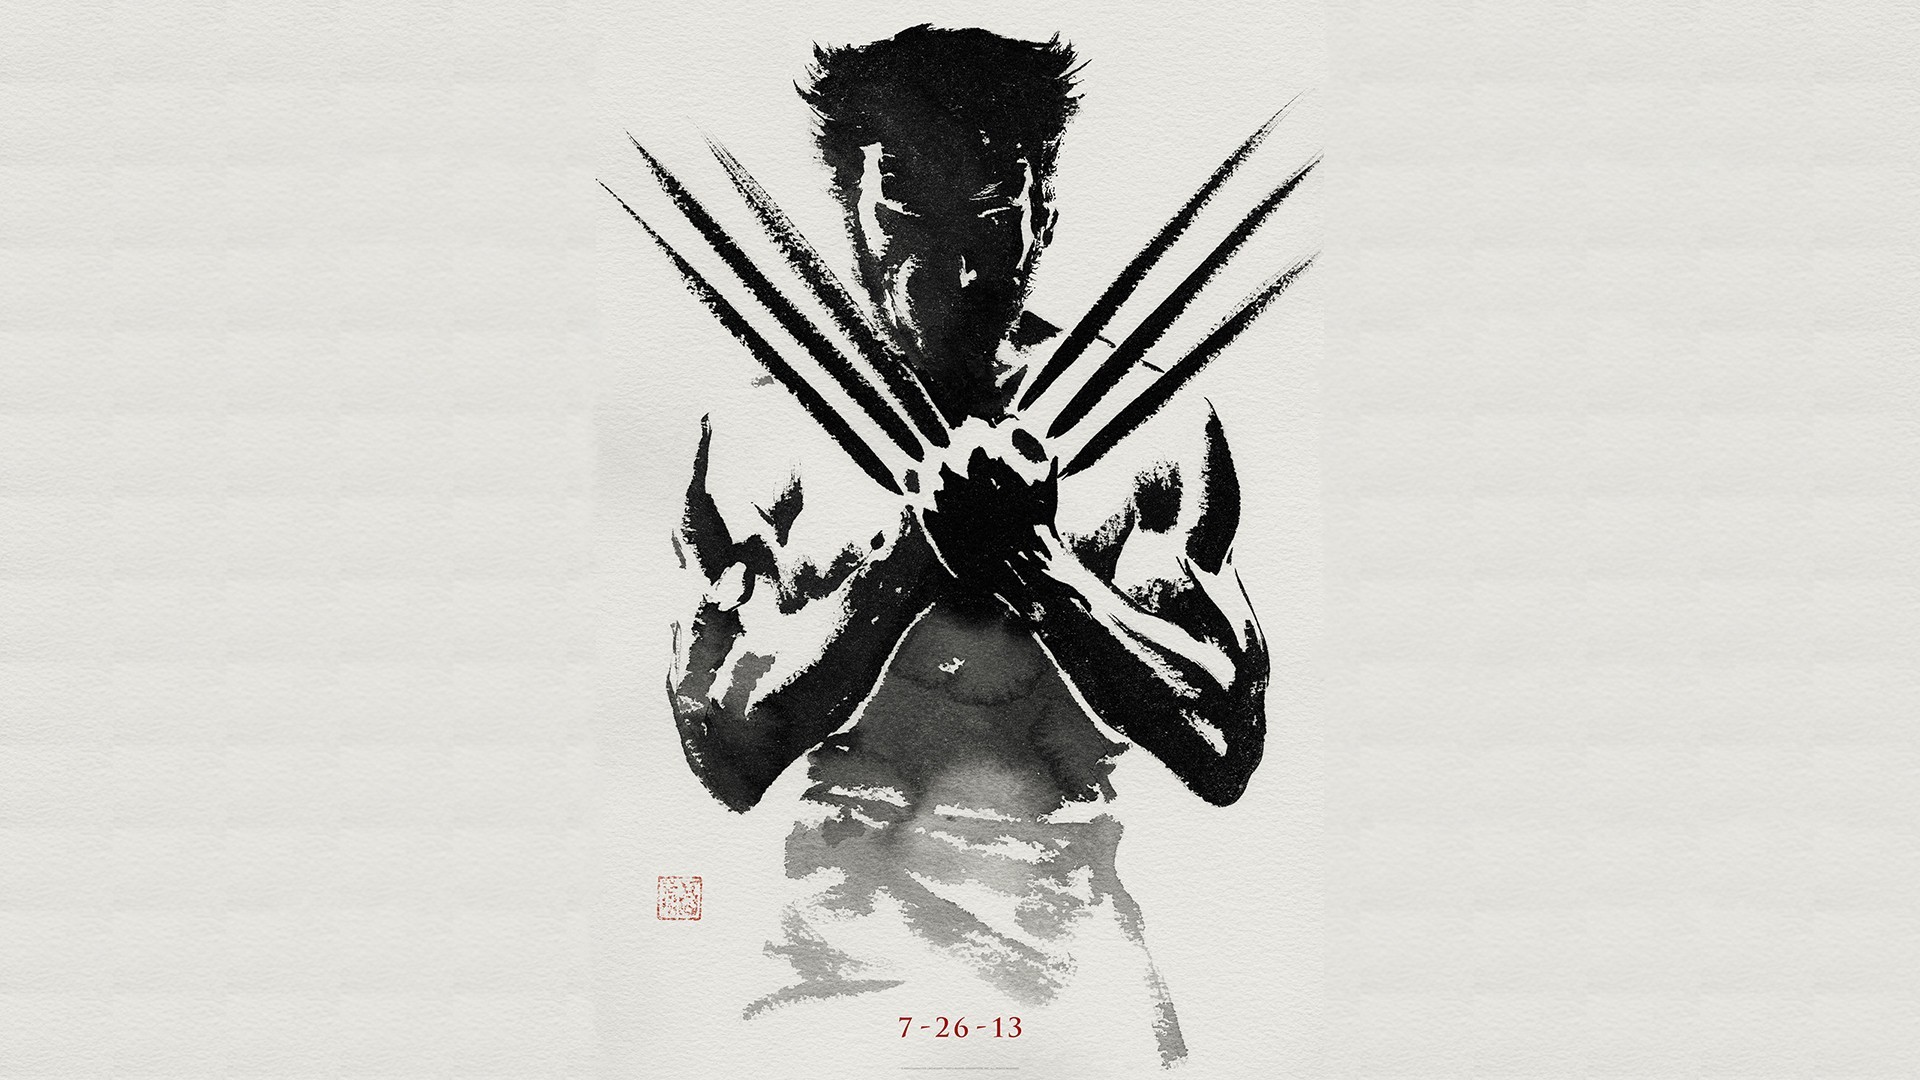 General 1920x1080 Wolverine X-Men claws adamantium artwork men movies 2013 (Year) simple background white background